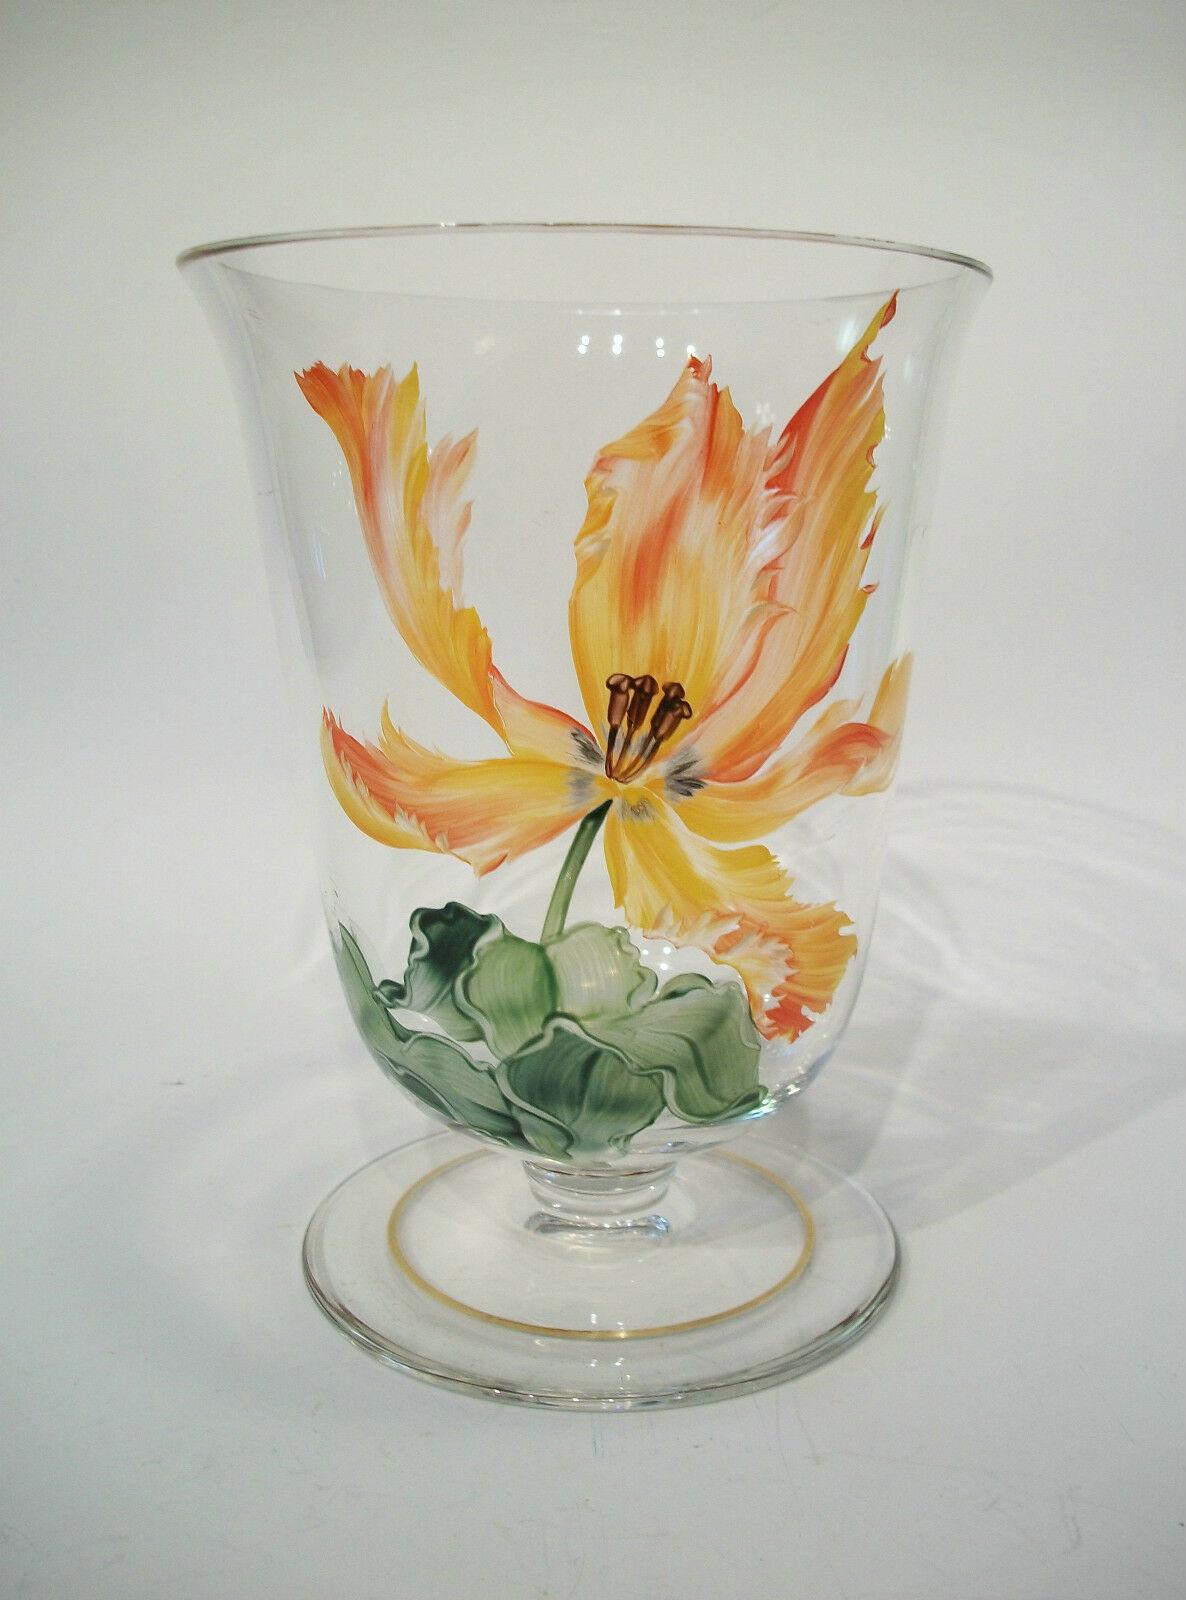 J. & L. LOBMEYR - Vase in Patrizierform aus der Mitte des Jahrhunderts - mit einer handgemalten und emaillierten orangefarbenen und gelben 'Papageientulpe' - vergoldeter Rand - unsigniert (wahrscheinlich Lobmeyr, da dieses Muster 1952 eingeführt